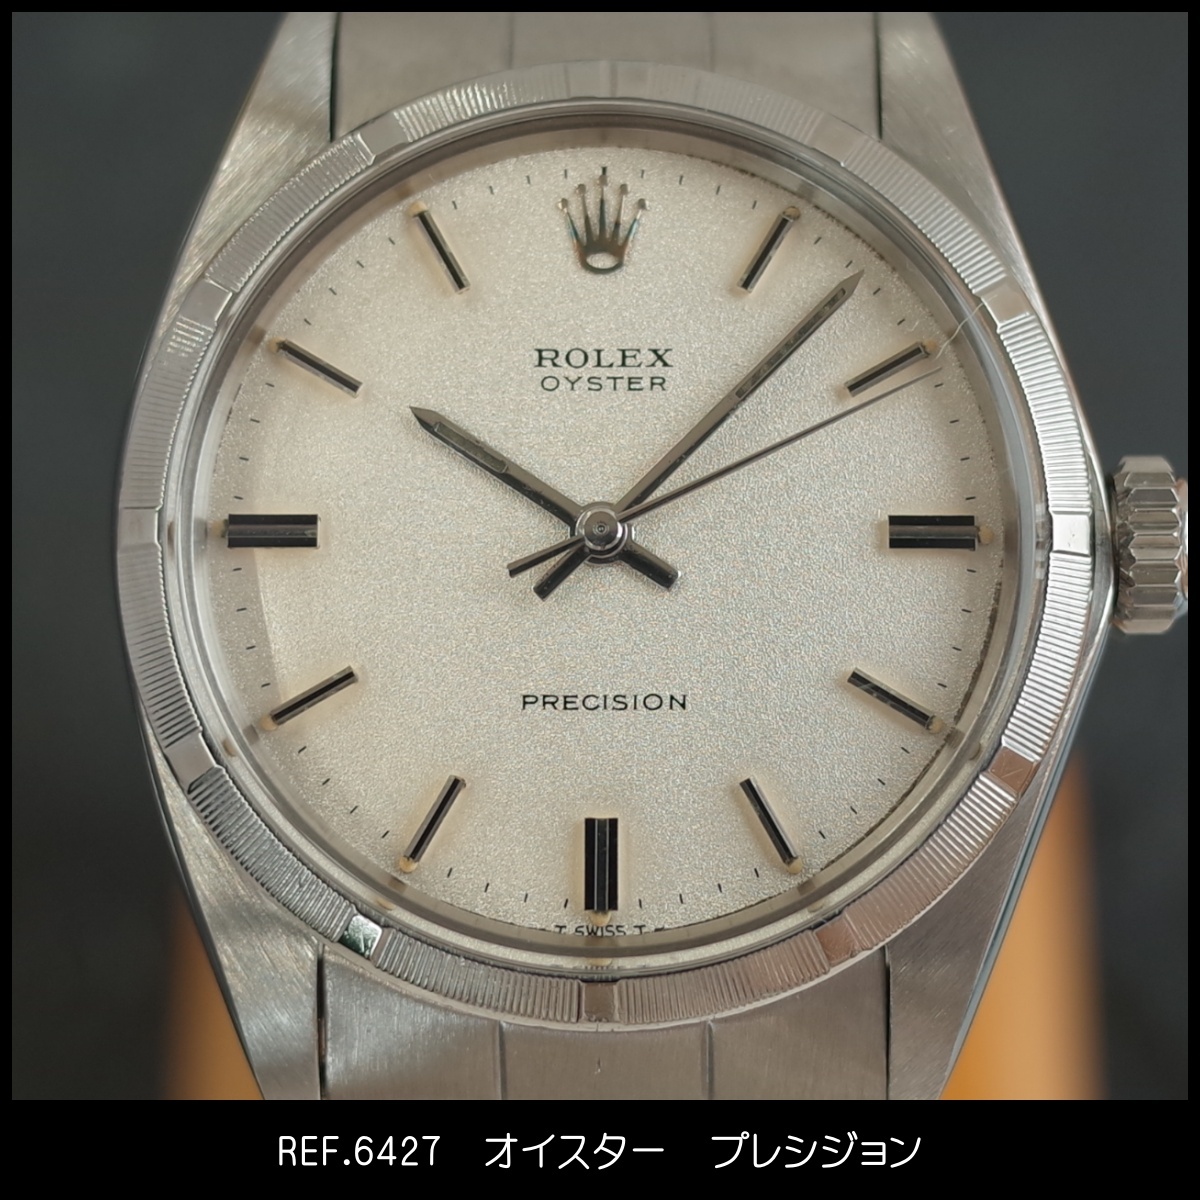 ロレックス 6427 オイスタープレシジョン 梨地 1969年 SS 飛出し王冠 リベット 手巻 メンズ 腕時計 ROLEX アンティーク OH済1年保証_画像2